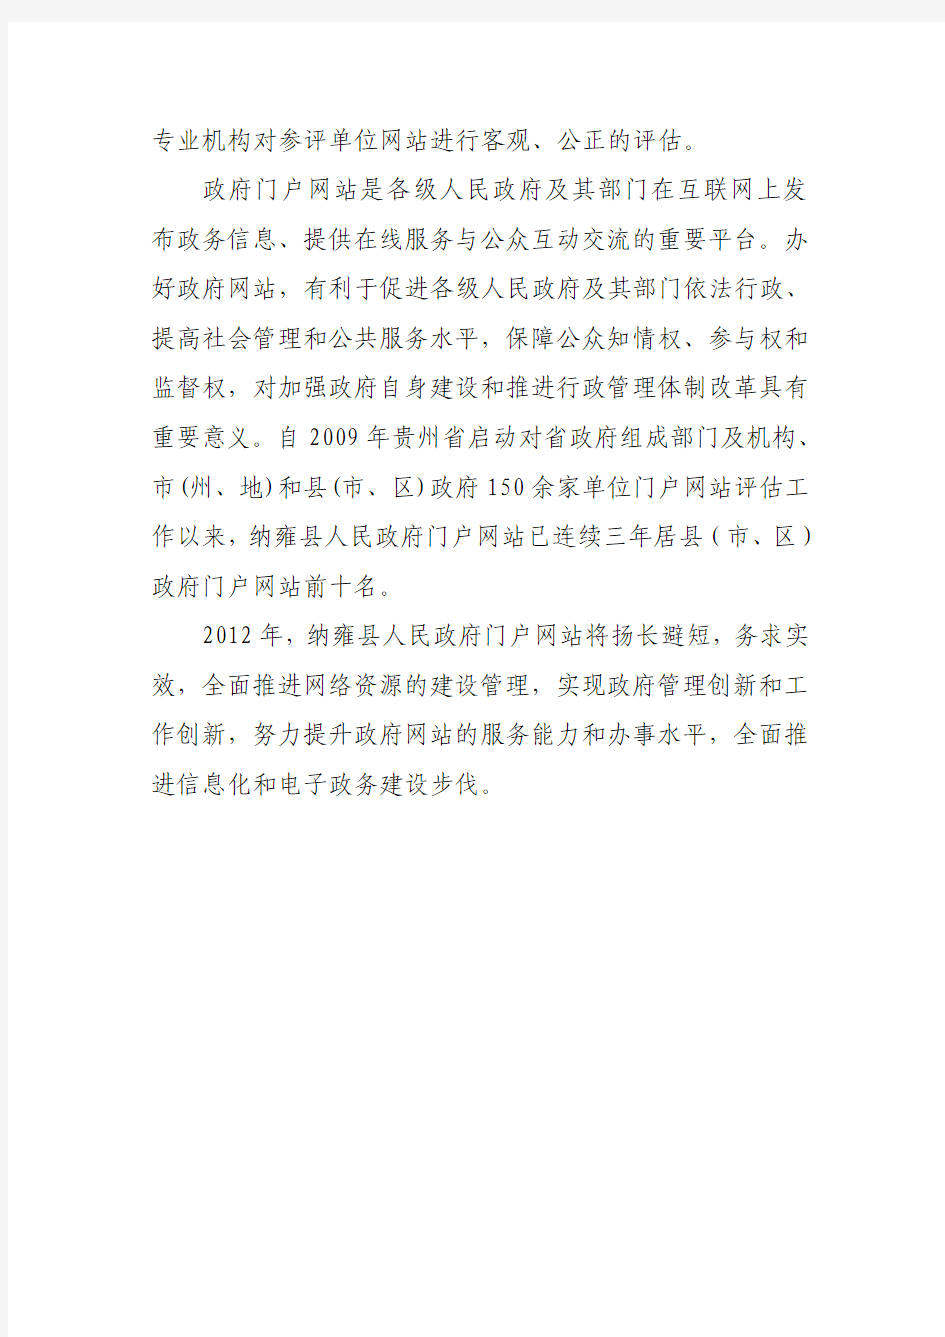 纳雍县人民政府门户网站在2011年度全省政府系统门户网站绩效评估中再获佳绩